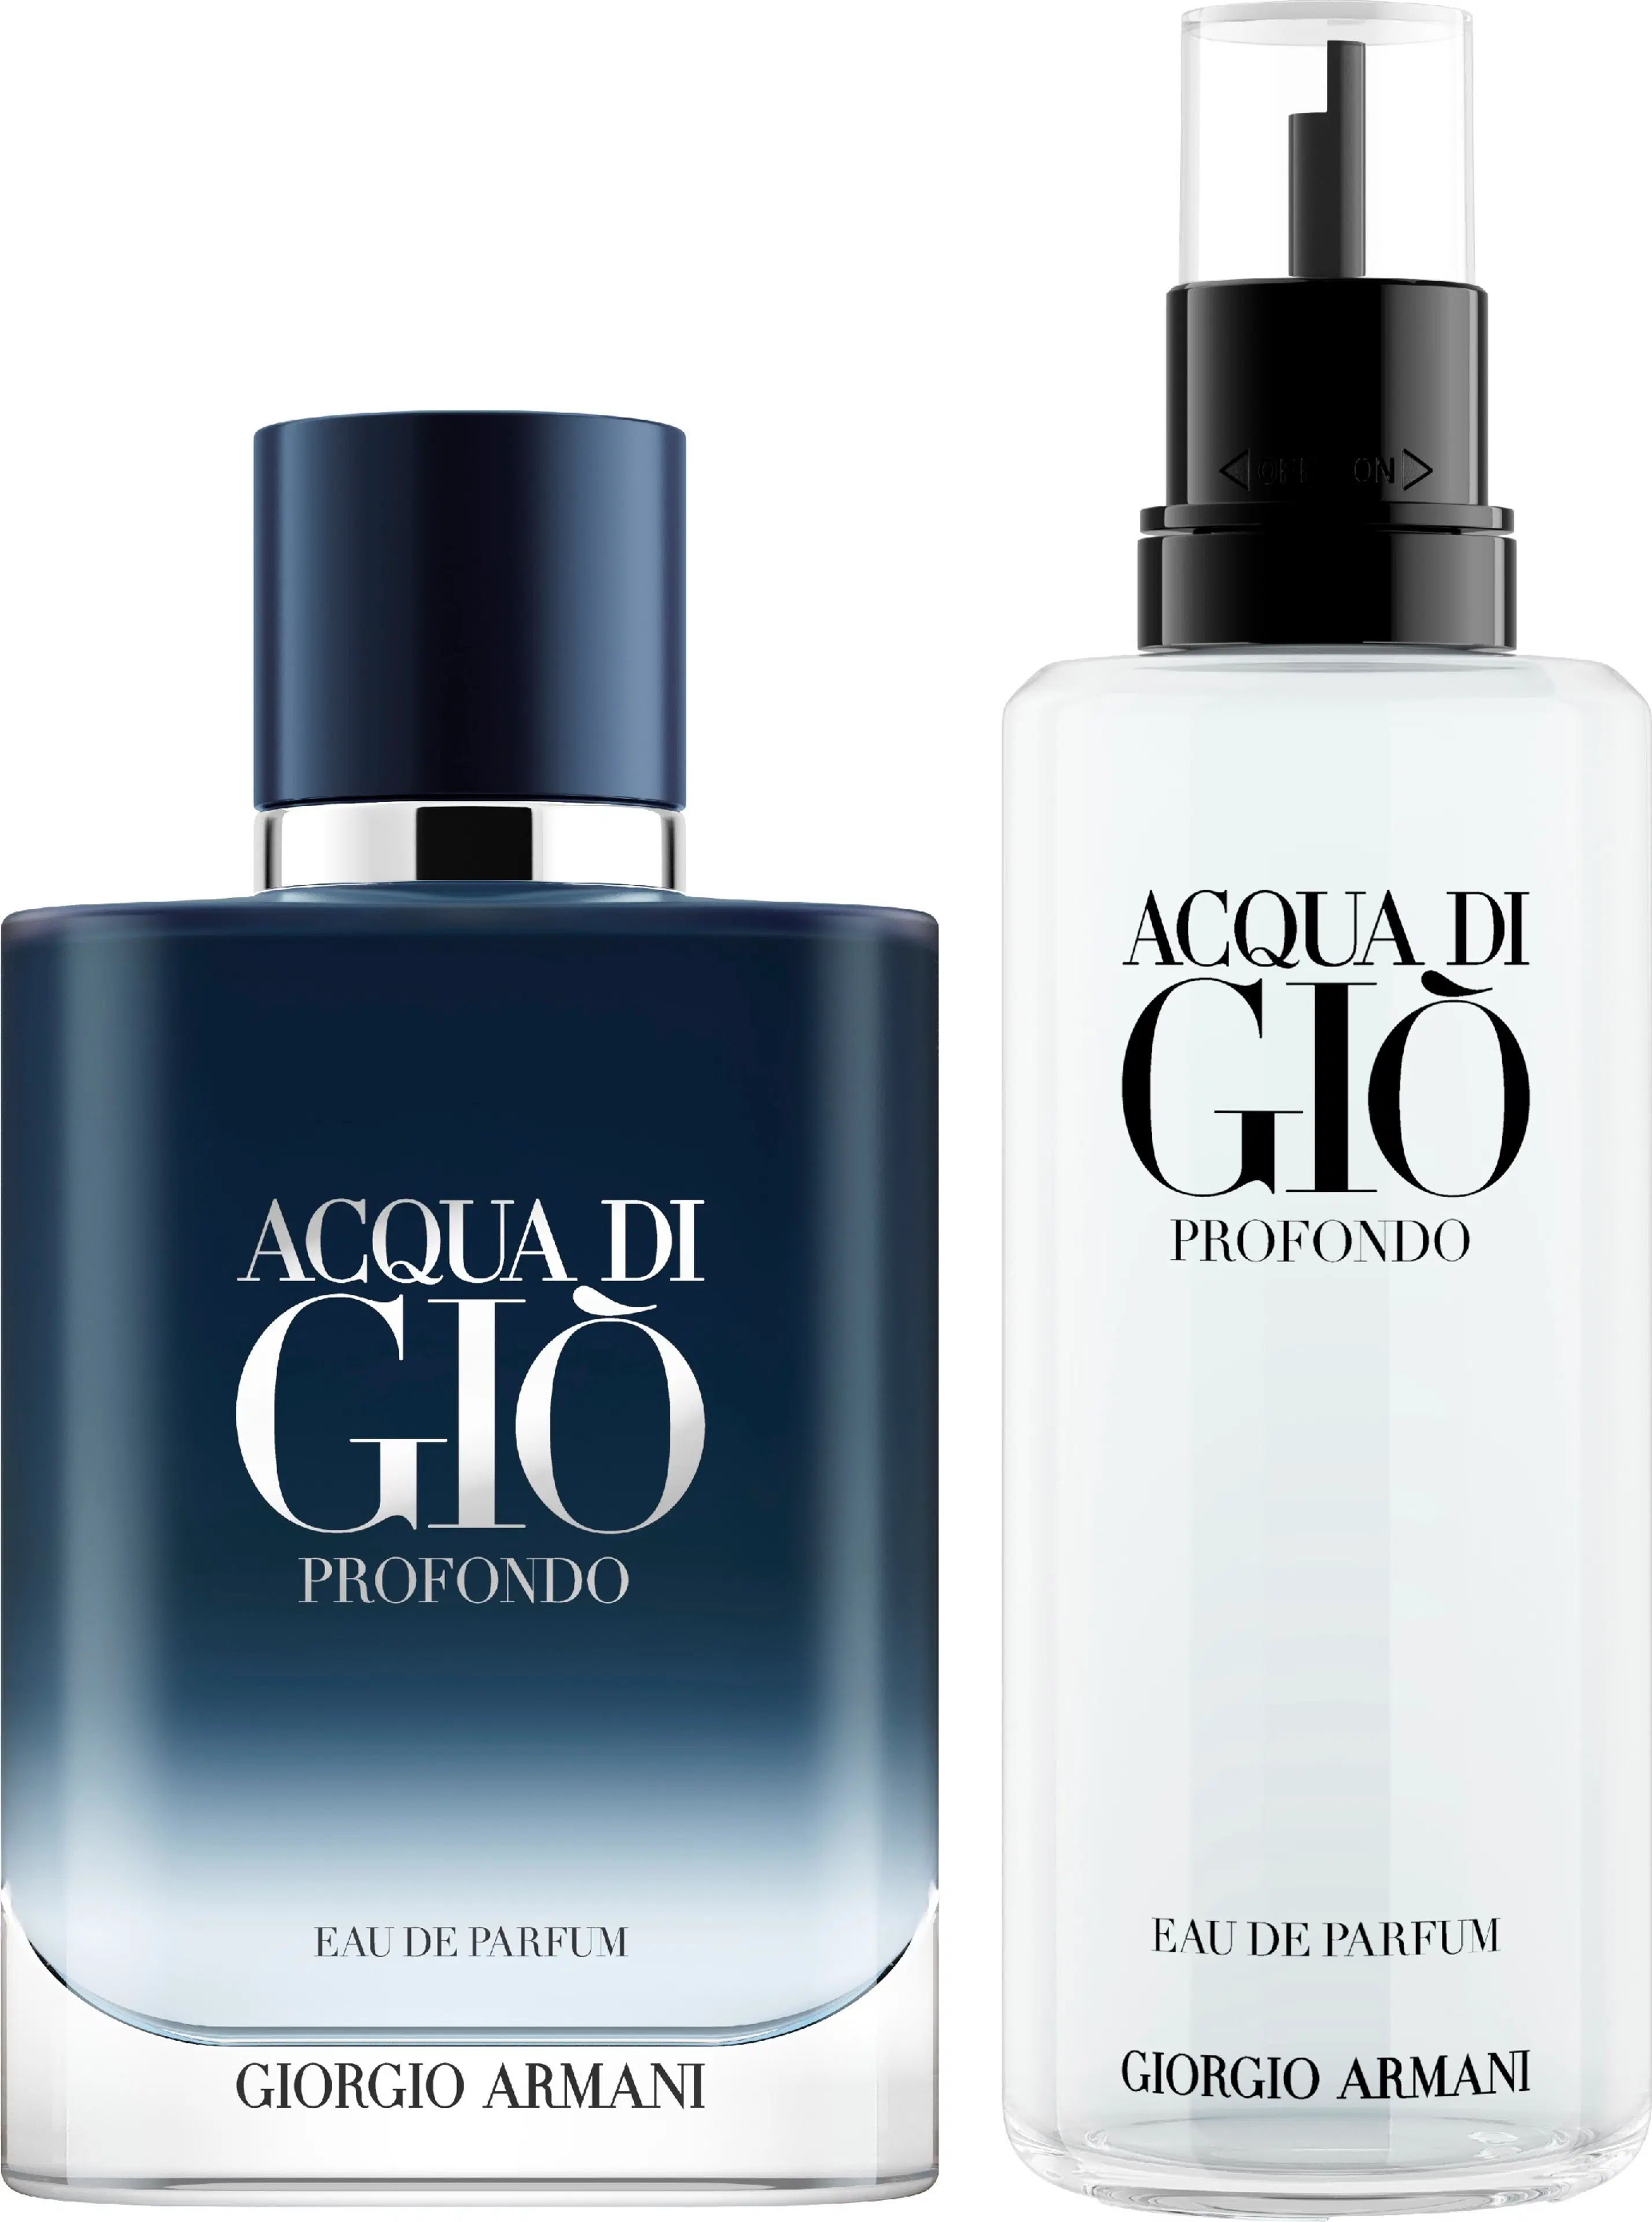 Giorgio Armani Acqua di Gio Profondo EdP Refill täyttöpullo 150 ml